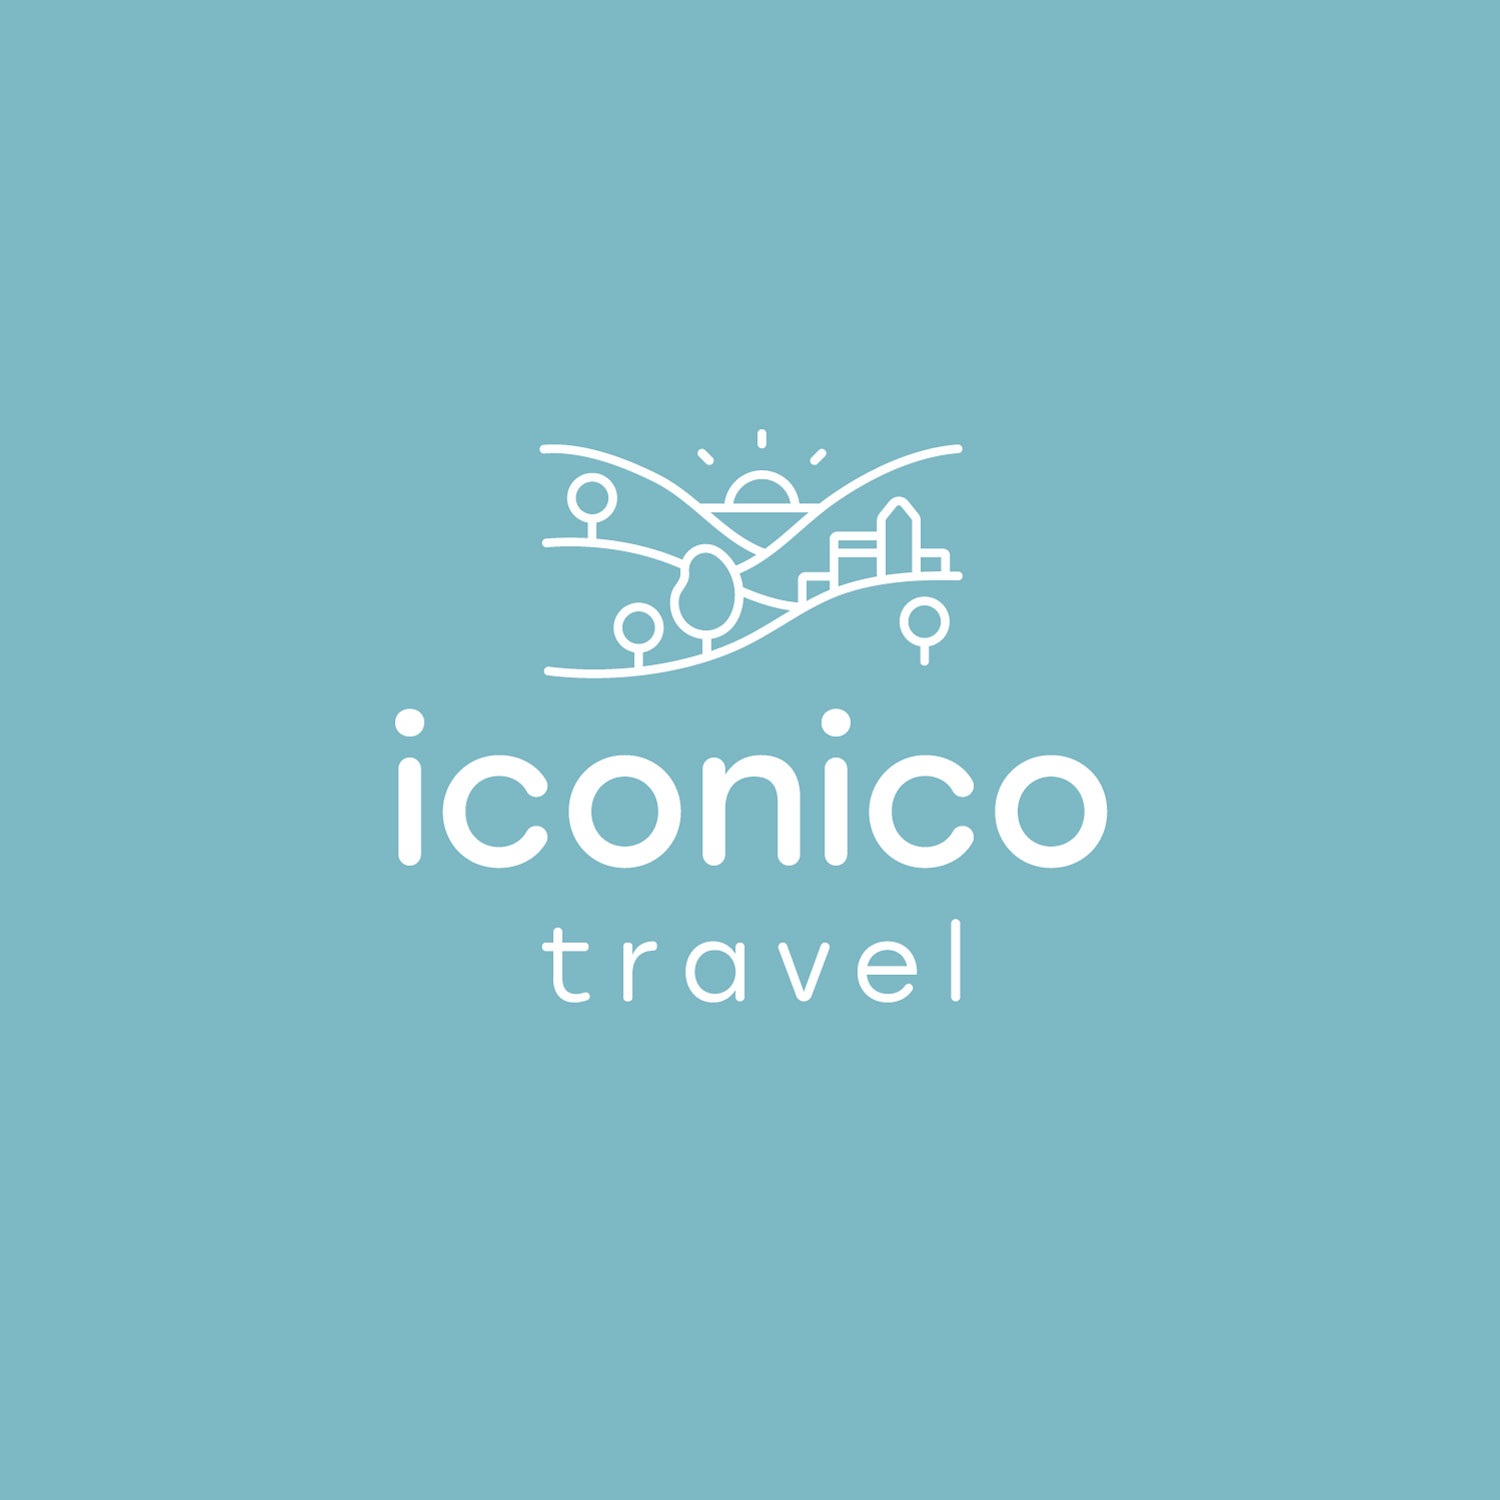 Iconico Travel